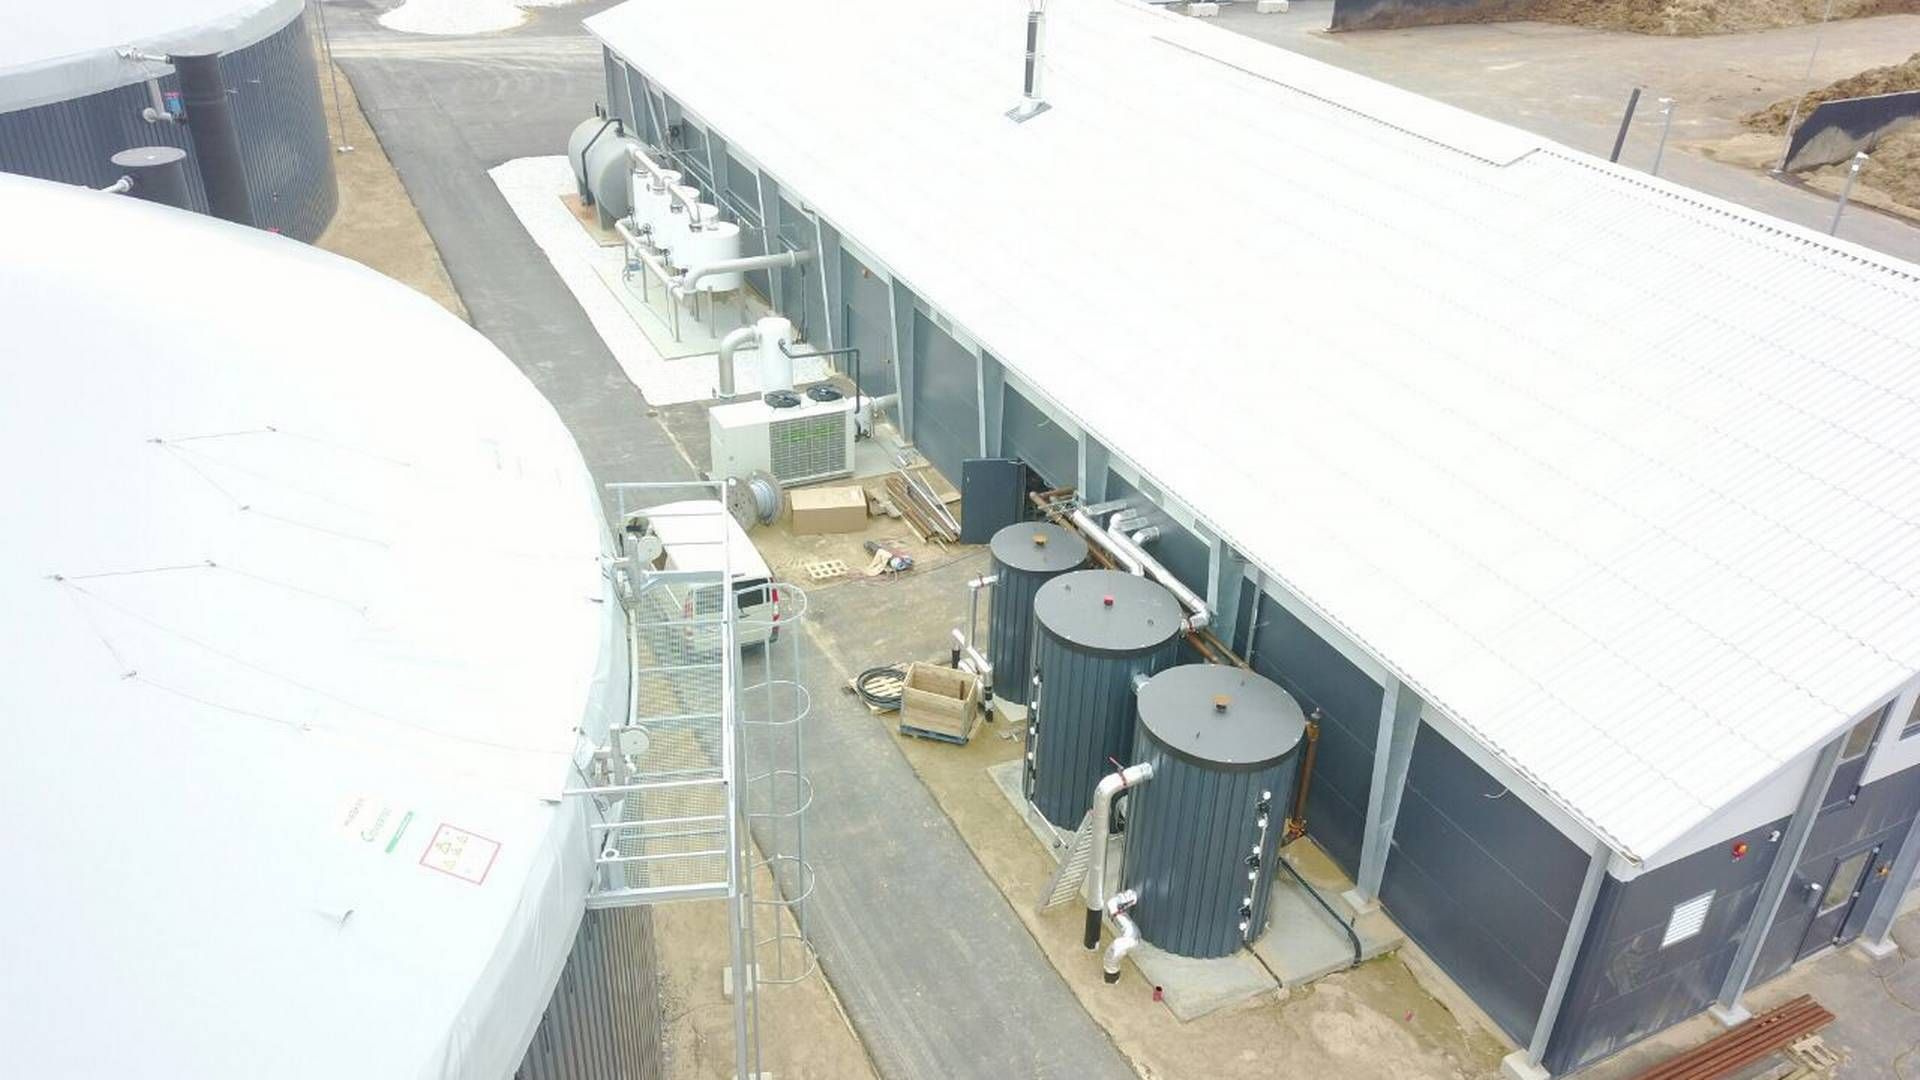 En udvidelse hos Sindal Biogas er blevet et hovedspørgsmål i et sagsanlæg mellem selskabet og det statslige gasselskab Evida. | Foto: Dbc Invest / Pr